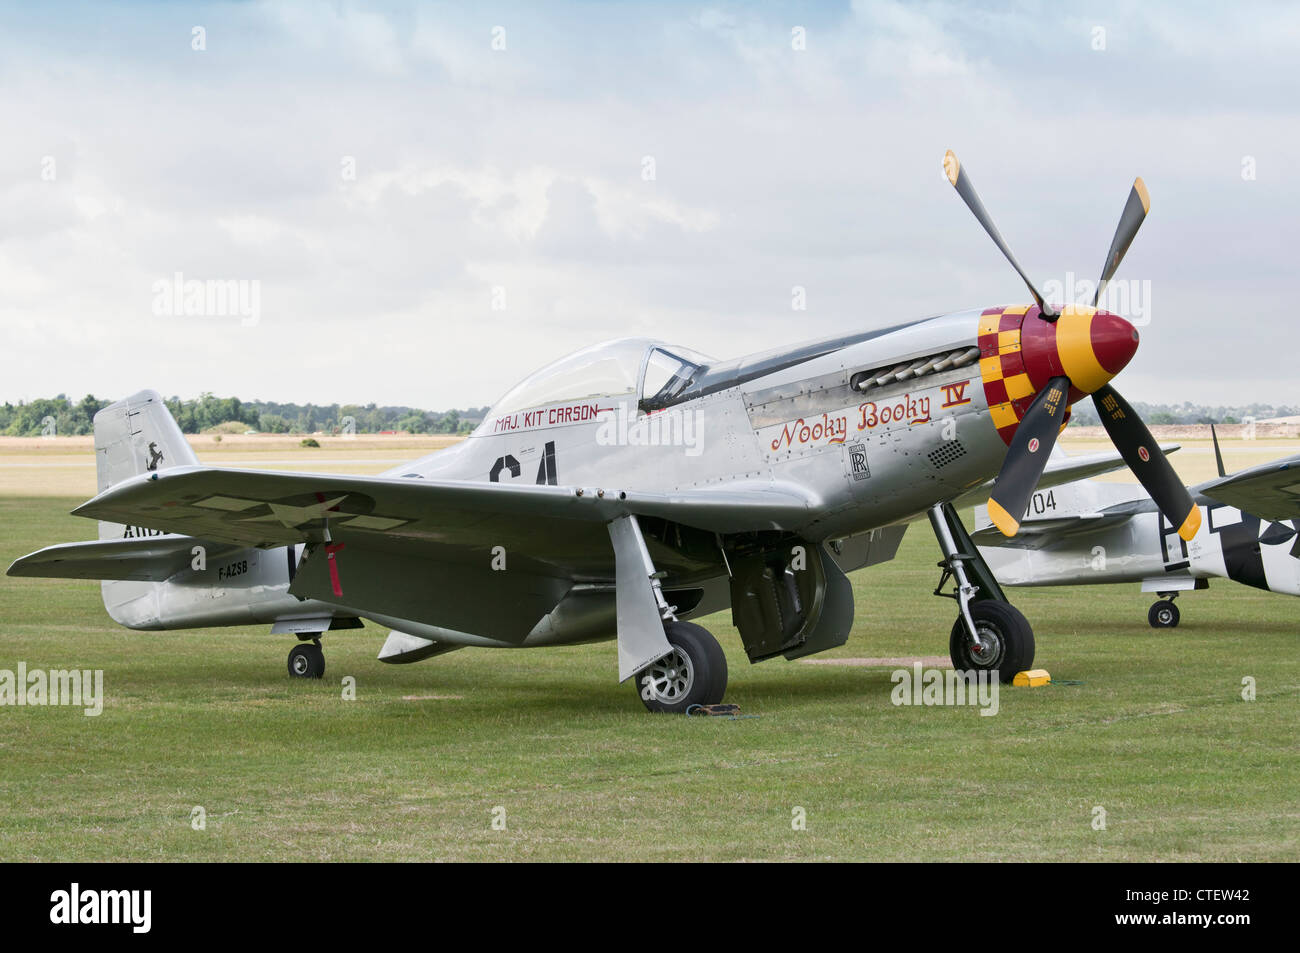 P-51 Mustang 'Nooky Booky IV' en el Flying Legends Airshow 2011, Imperial War Museum Duxford Foto de stock